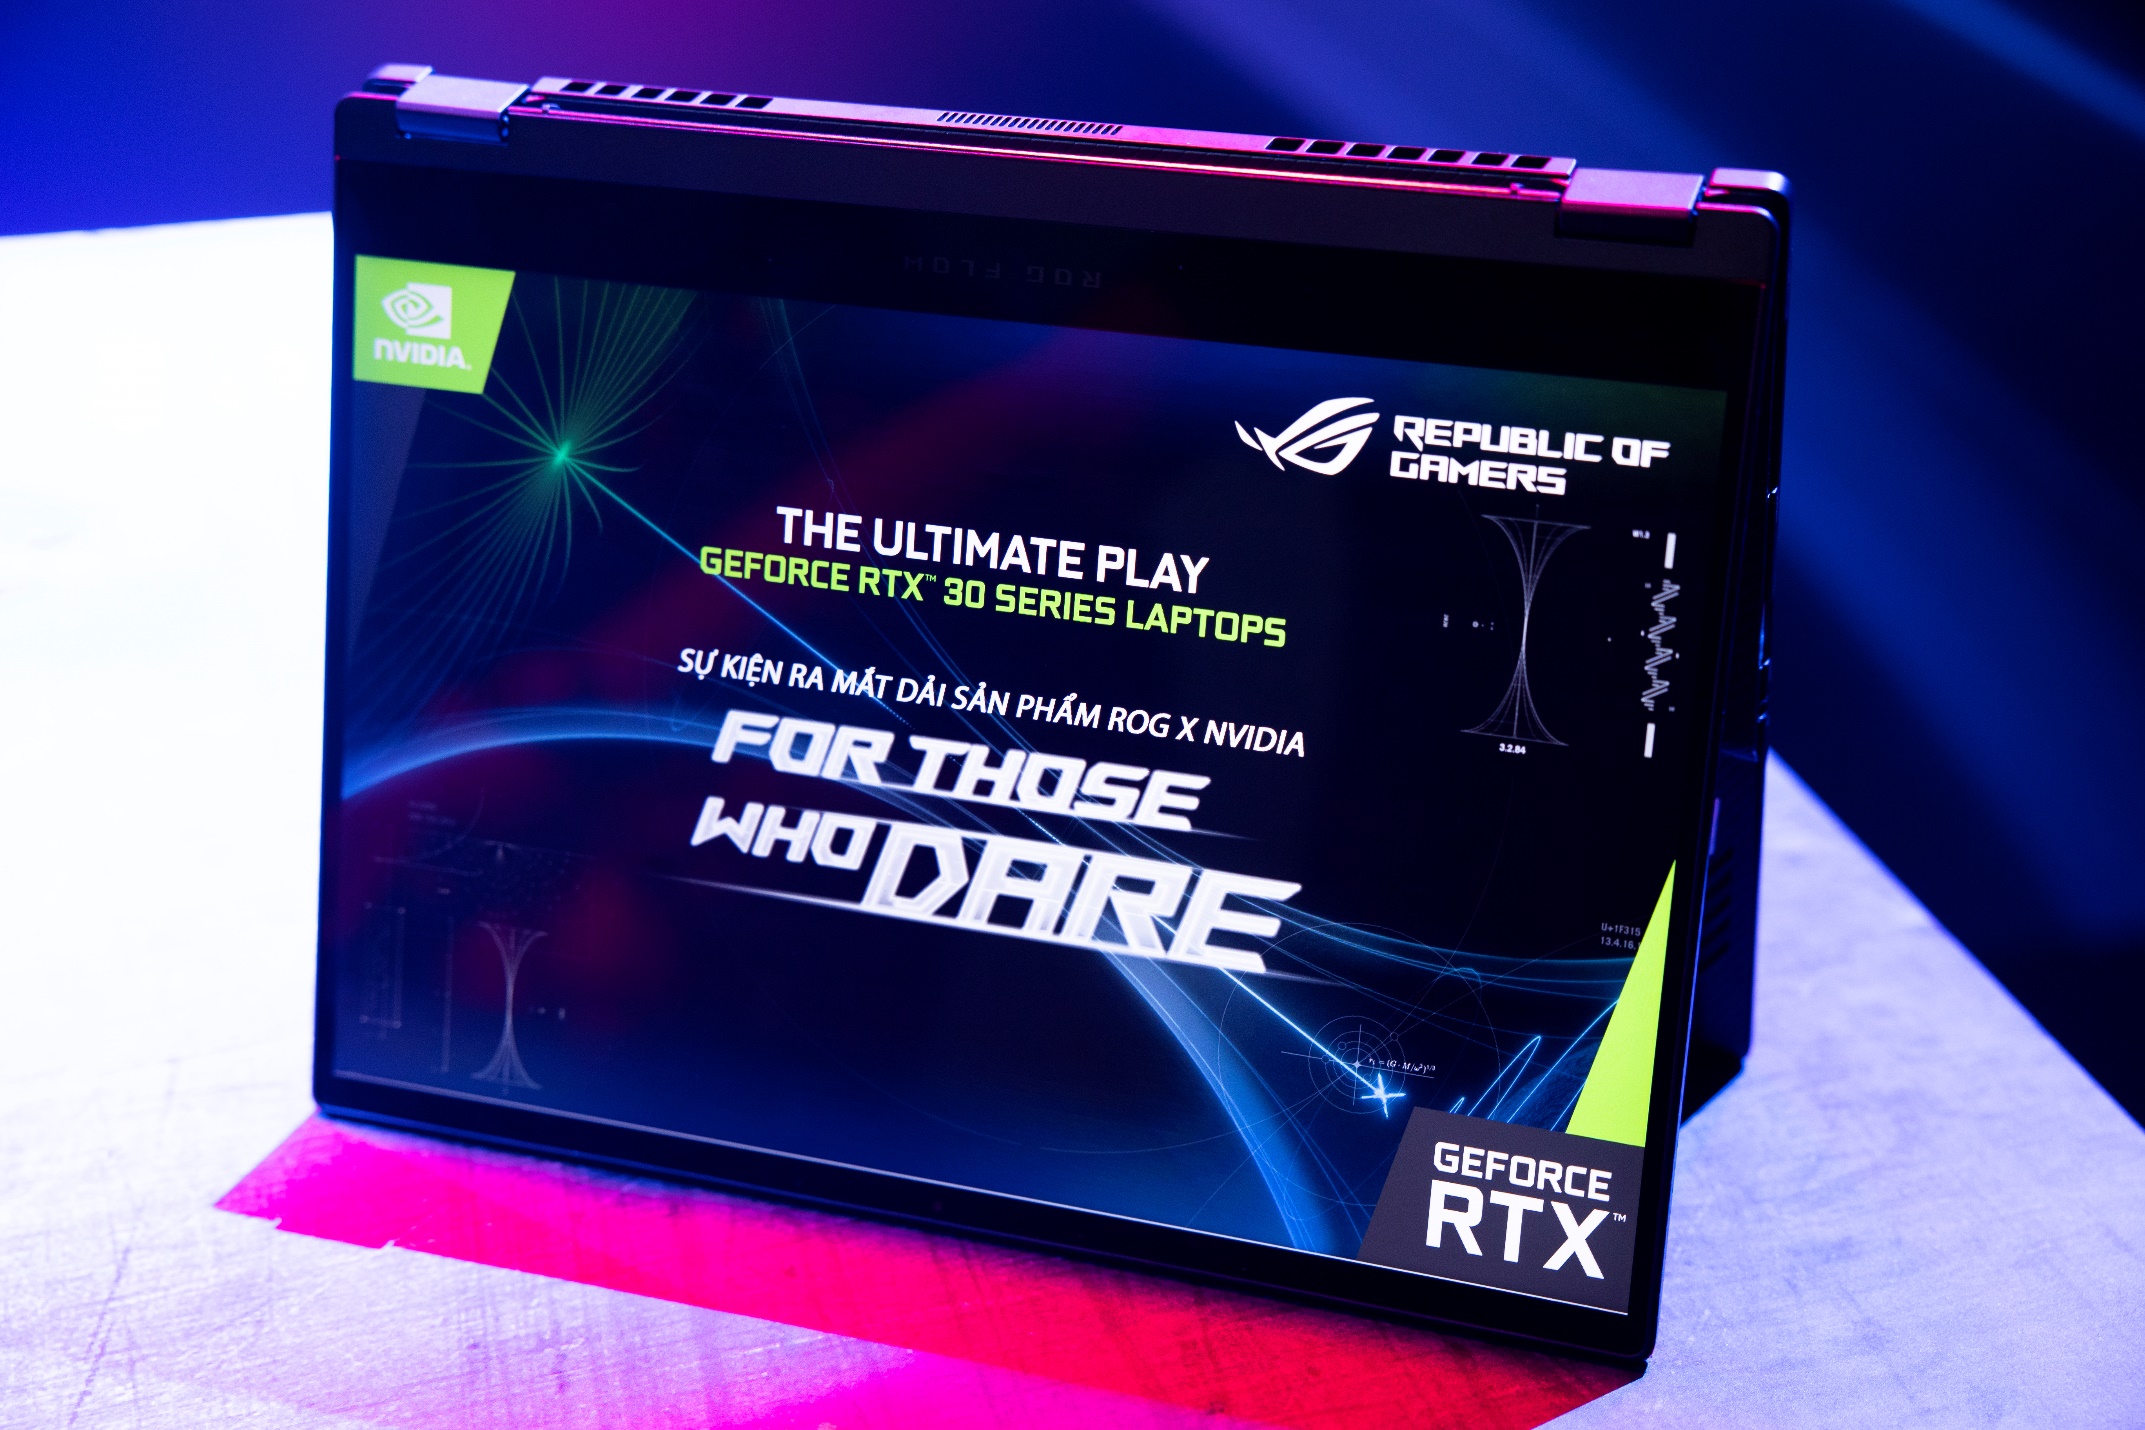 ROG công bố Flow X13 và dải sản phẩm toàn diện sử dụng đồ họa NVIDIA GeForce RTX 30-series